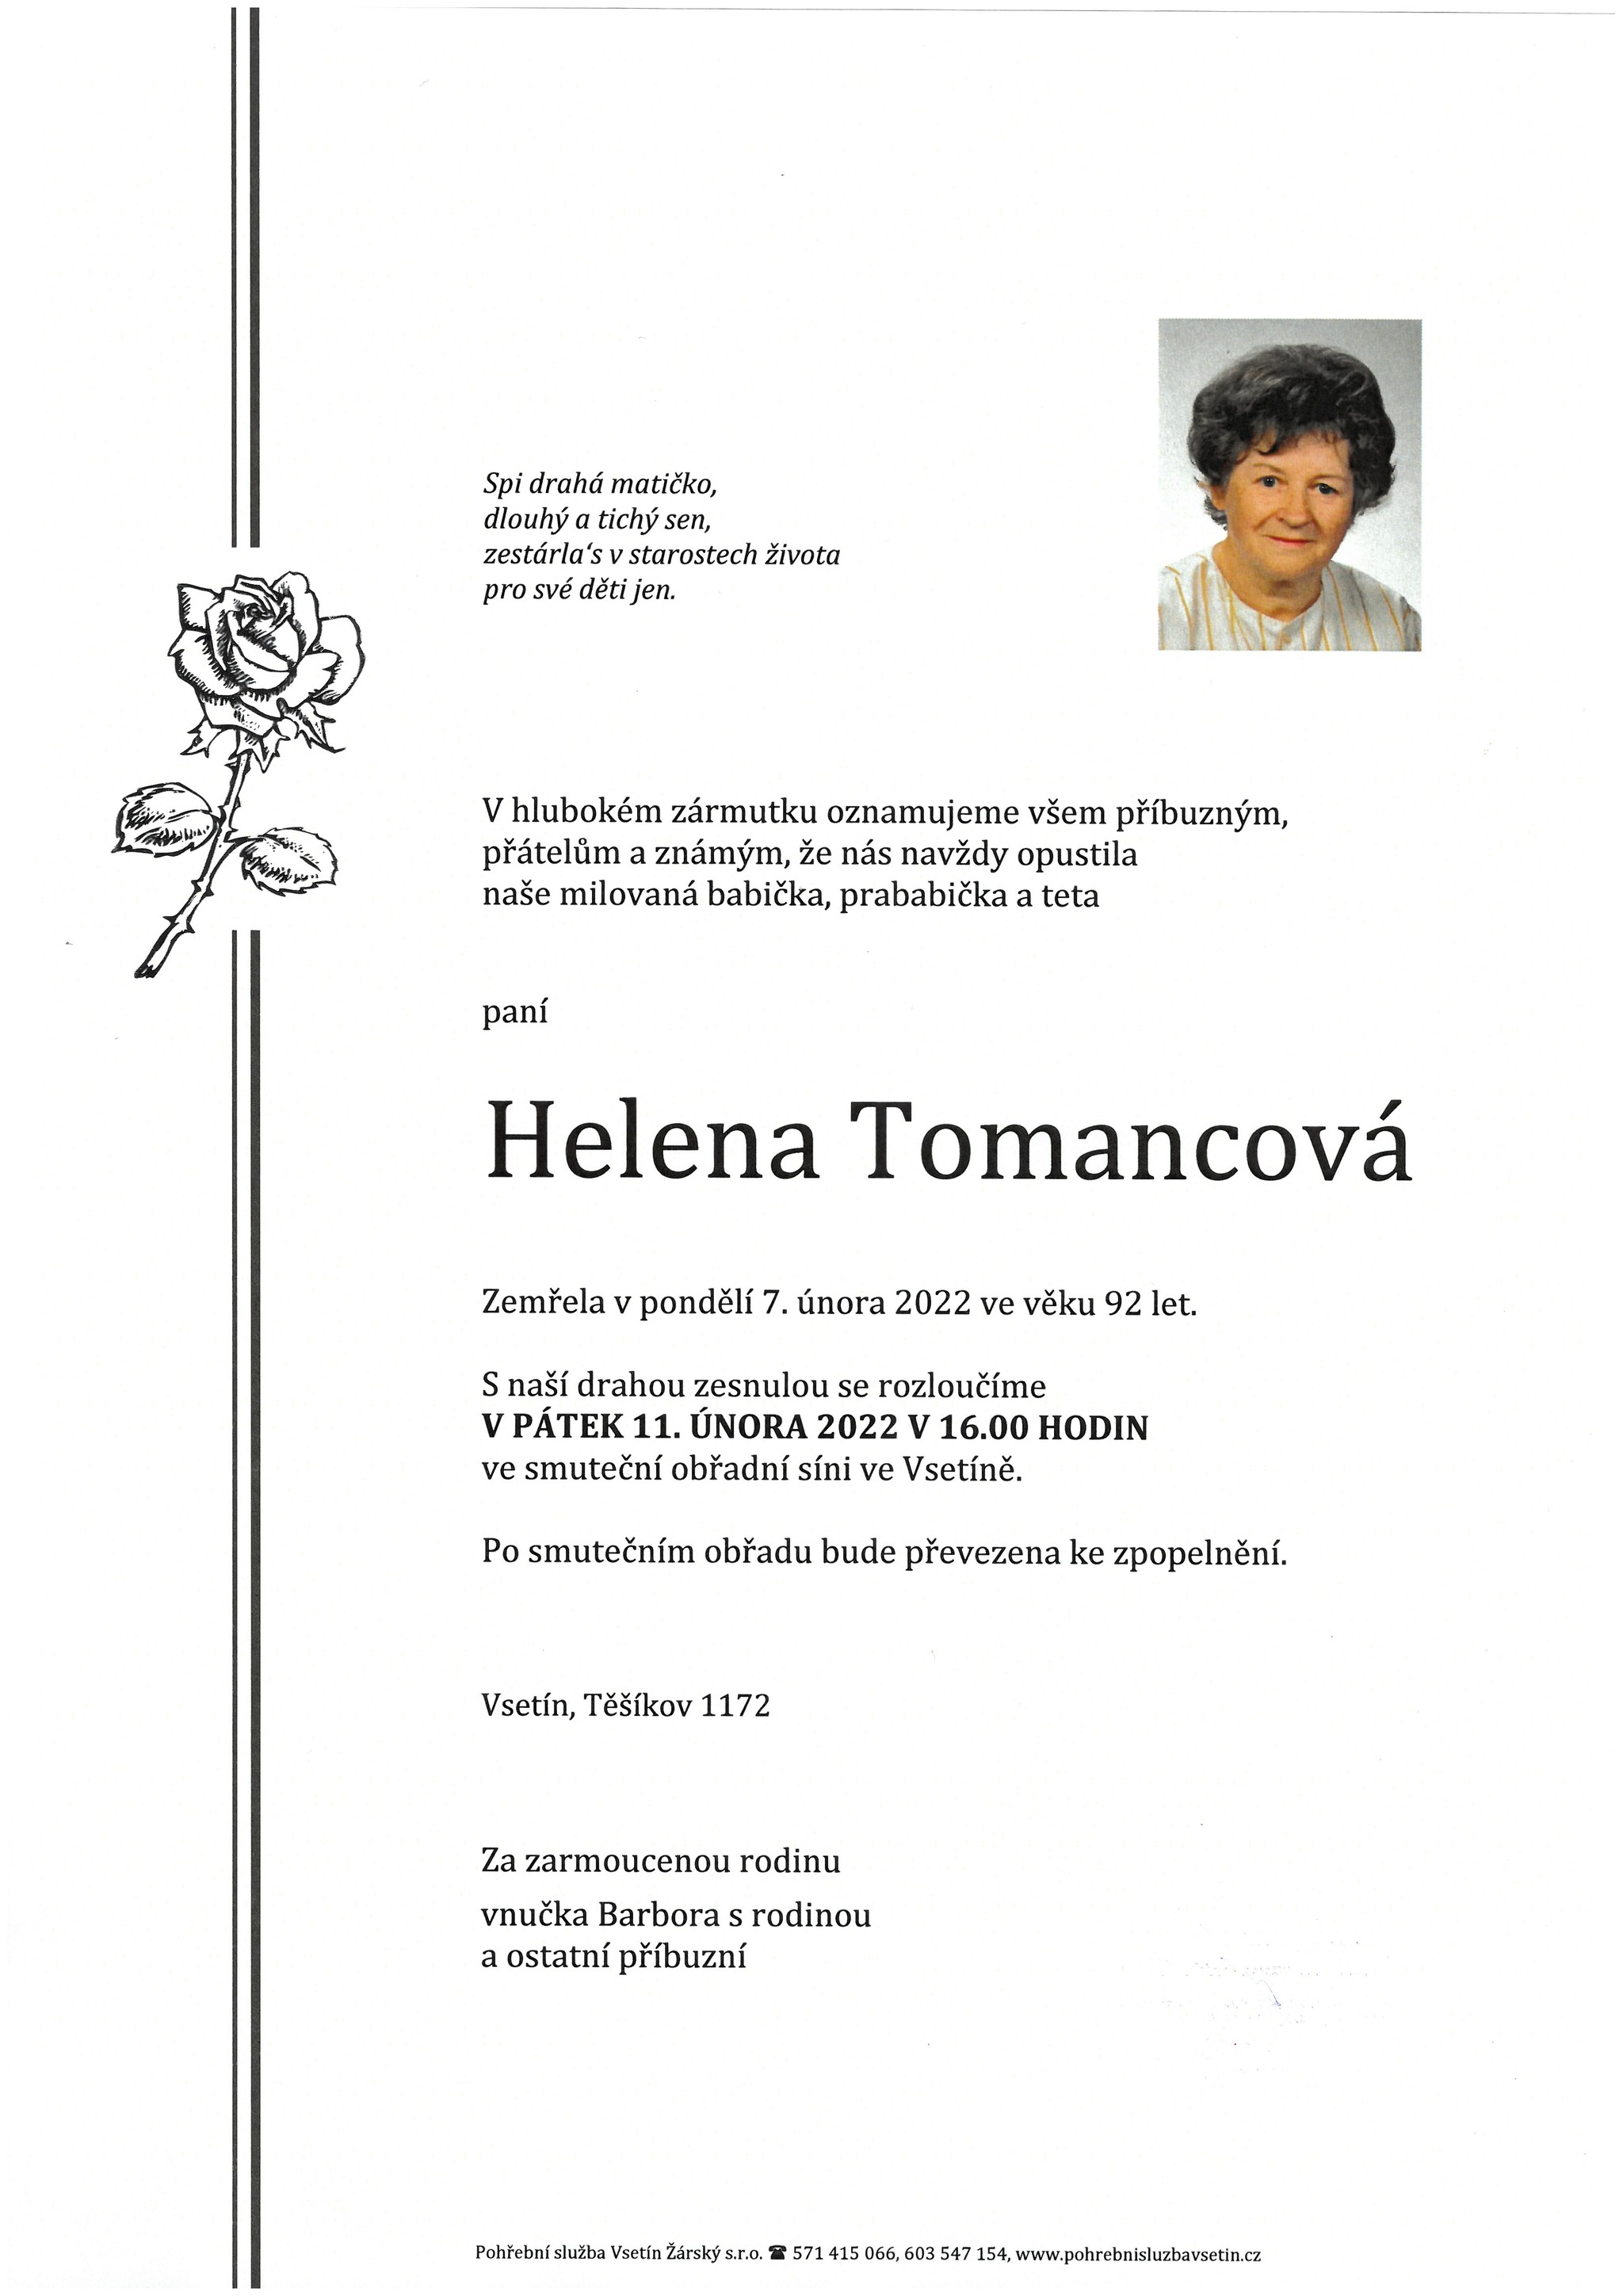 Helena Tomancová